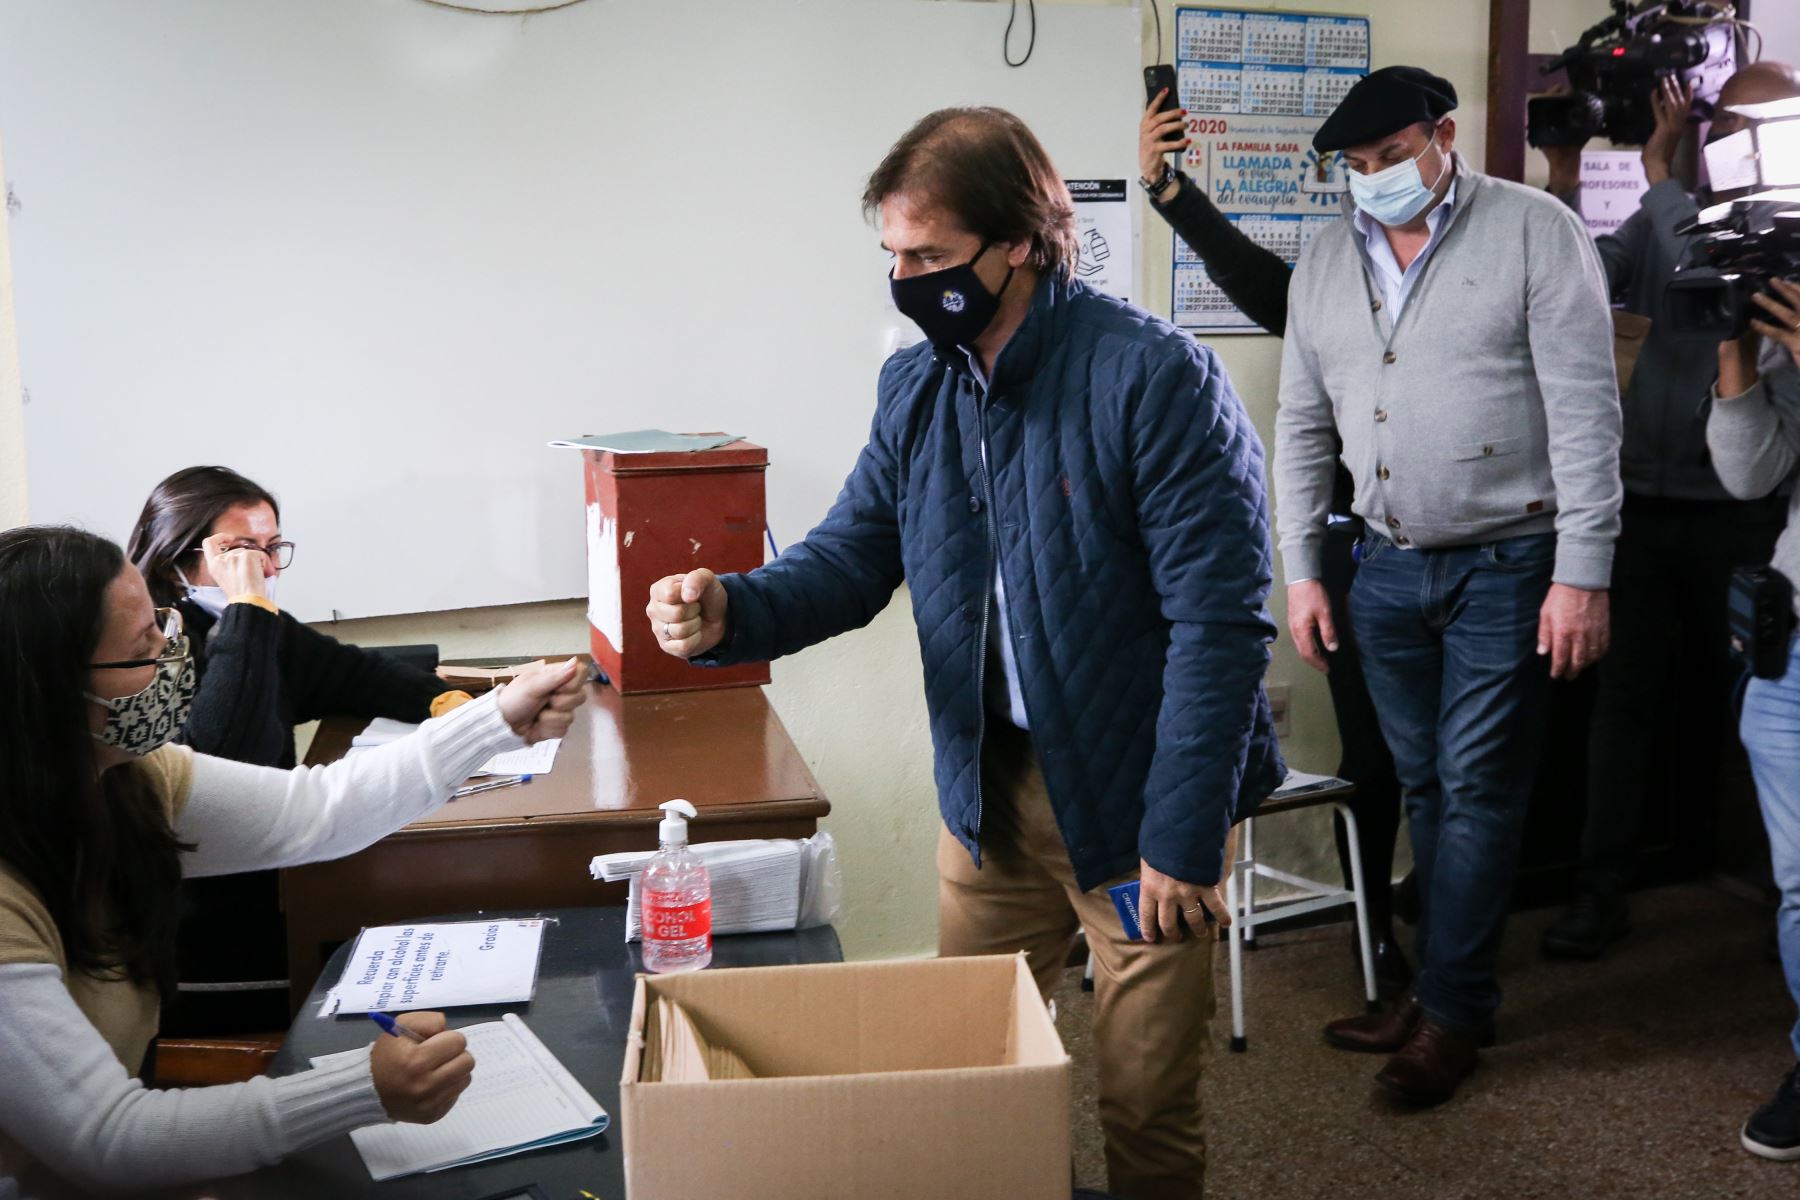 El presidente de Uruguay Luis Lacalle Pou, vota durante el desarrollo de las elecciones regionales, en Montevideo -Uruguay.
Foto: EFE